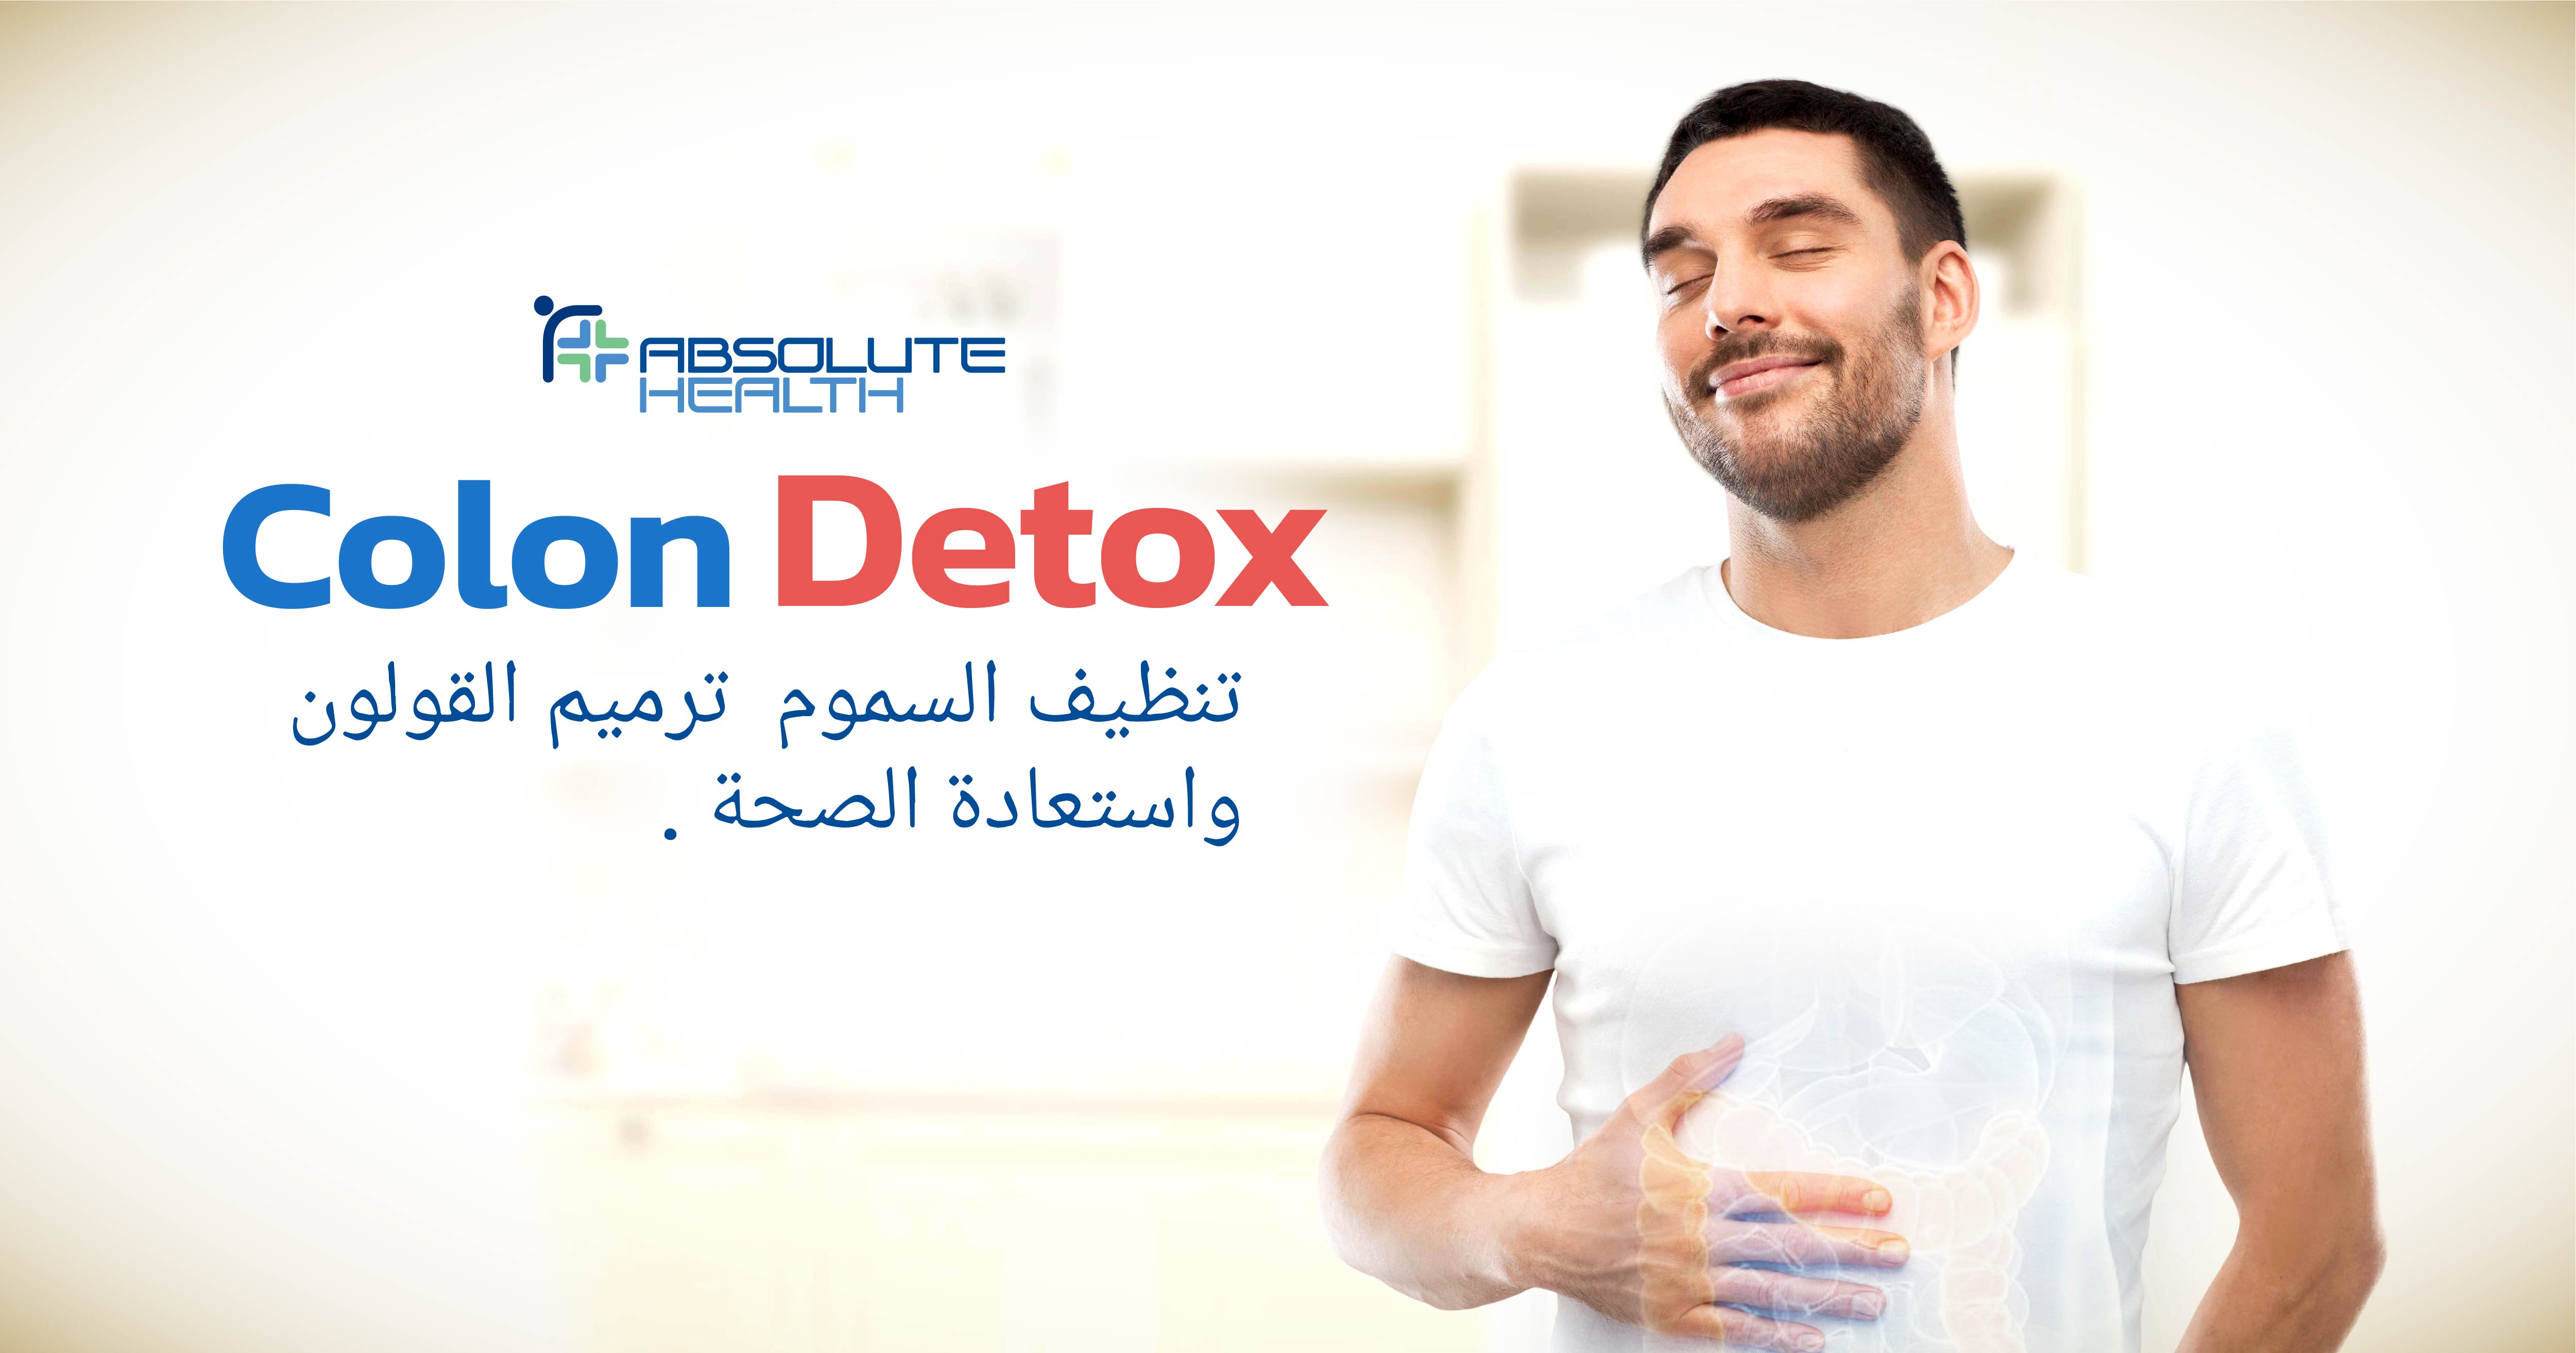 غسيل القولون (Colon Detox) مفيد للصحة وإزالة سموم القولون واستعادة صحته